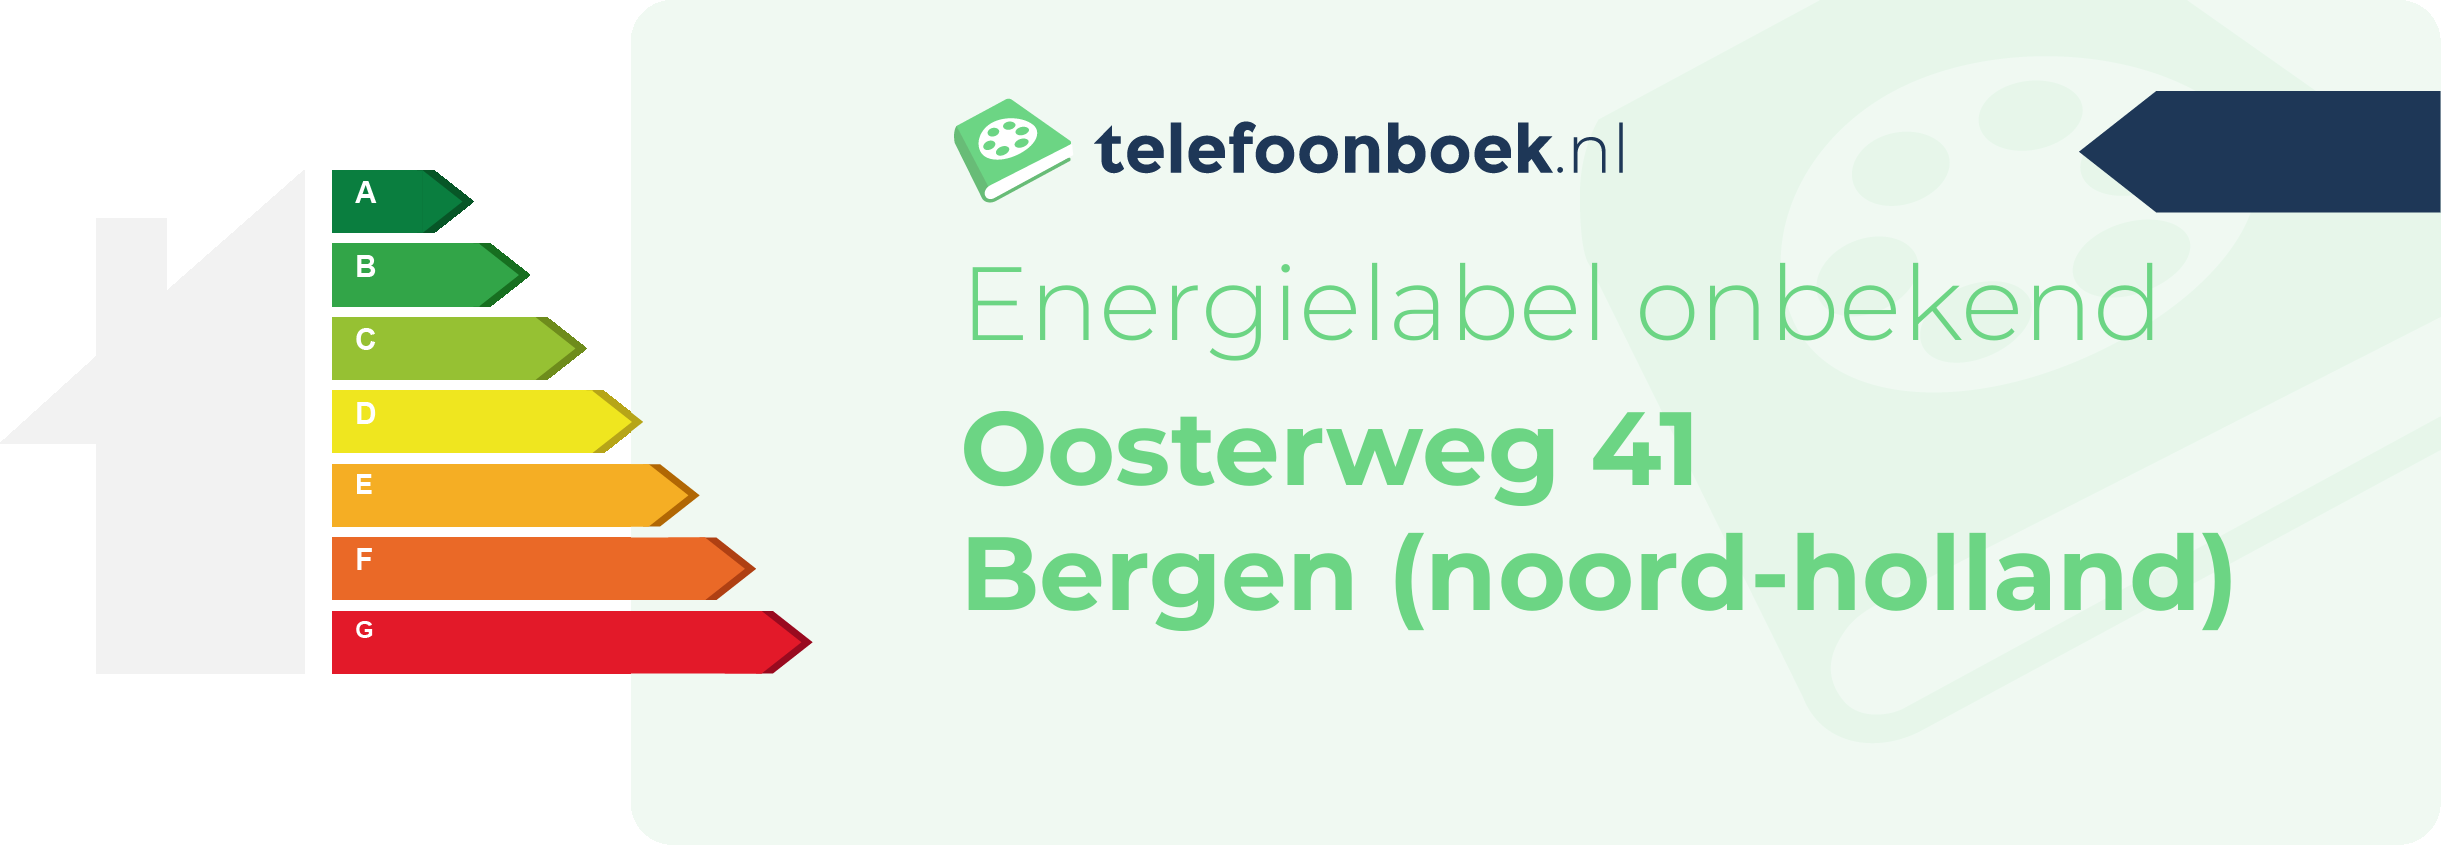 Energielabel Oosterweg 41 Bergen (Noord-Holland)